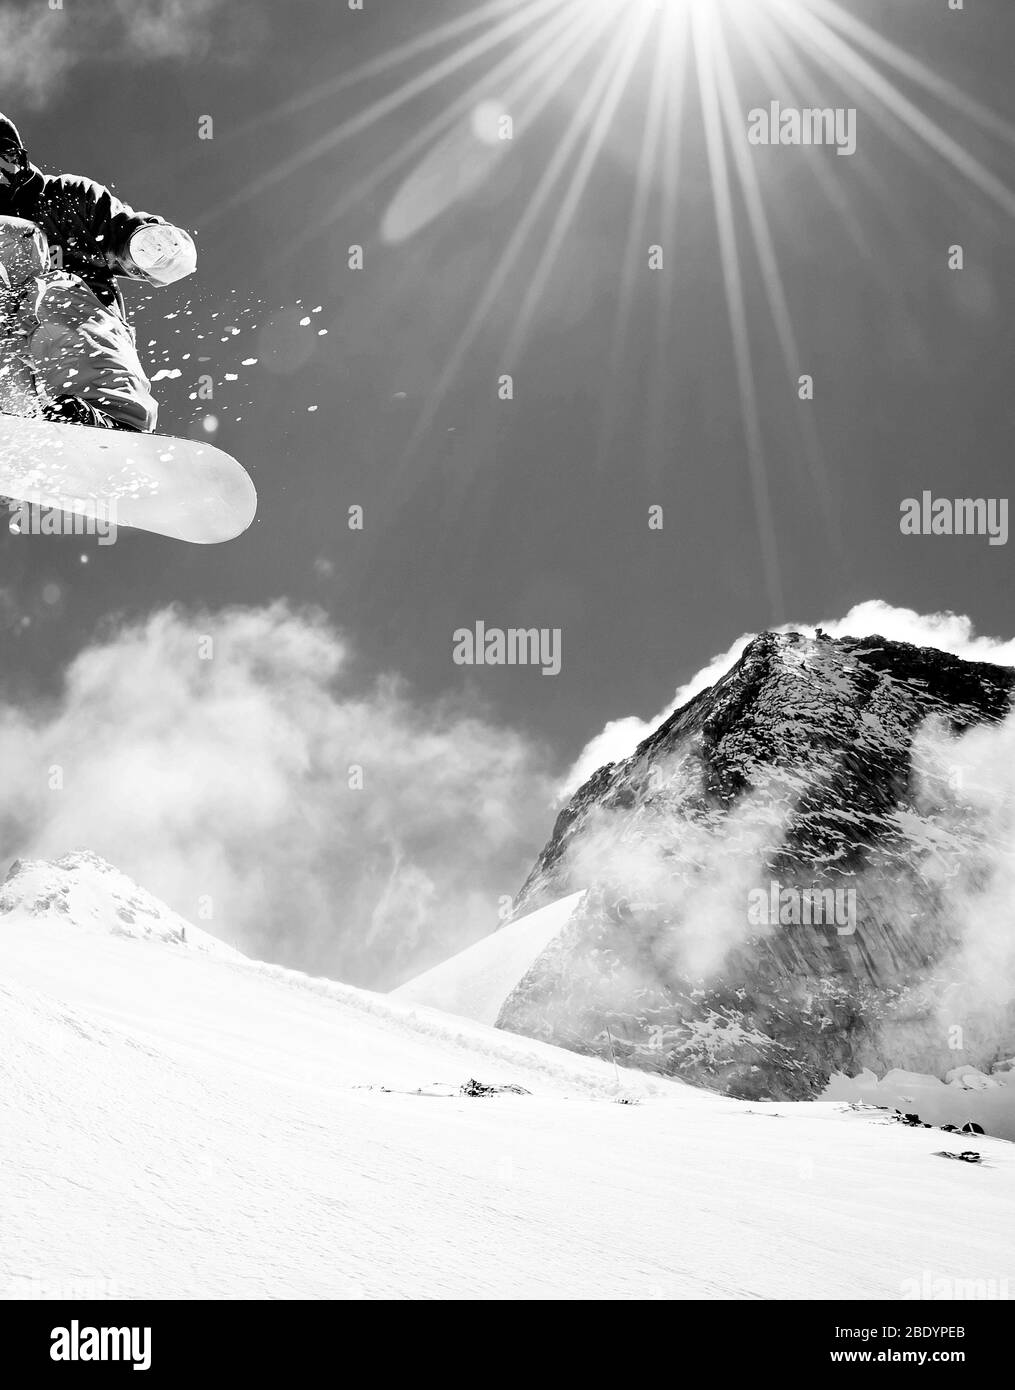 Ski slope on a mountain side Stock Photo